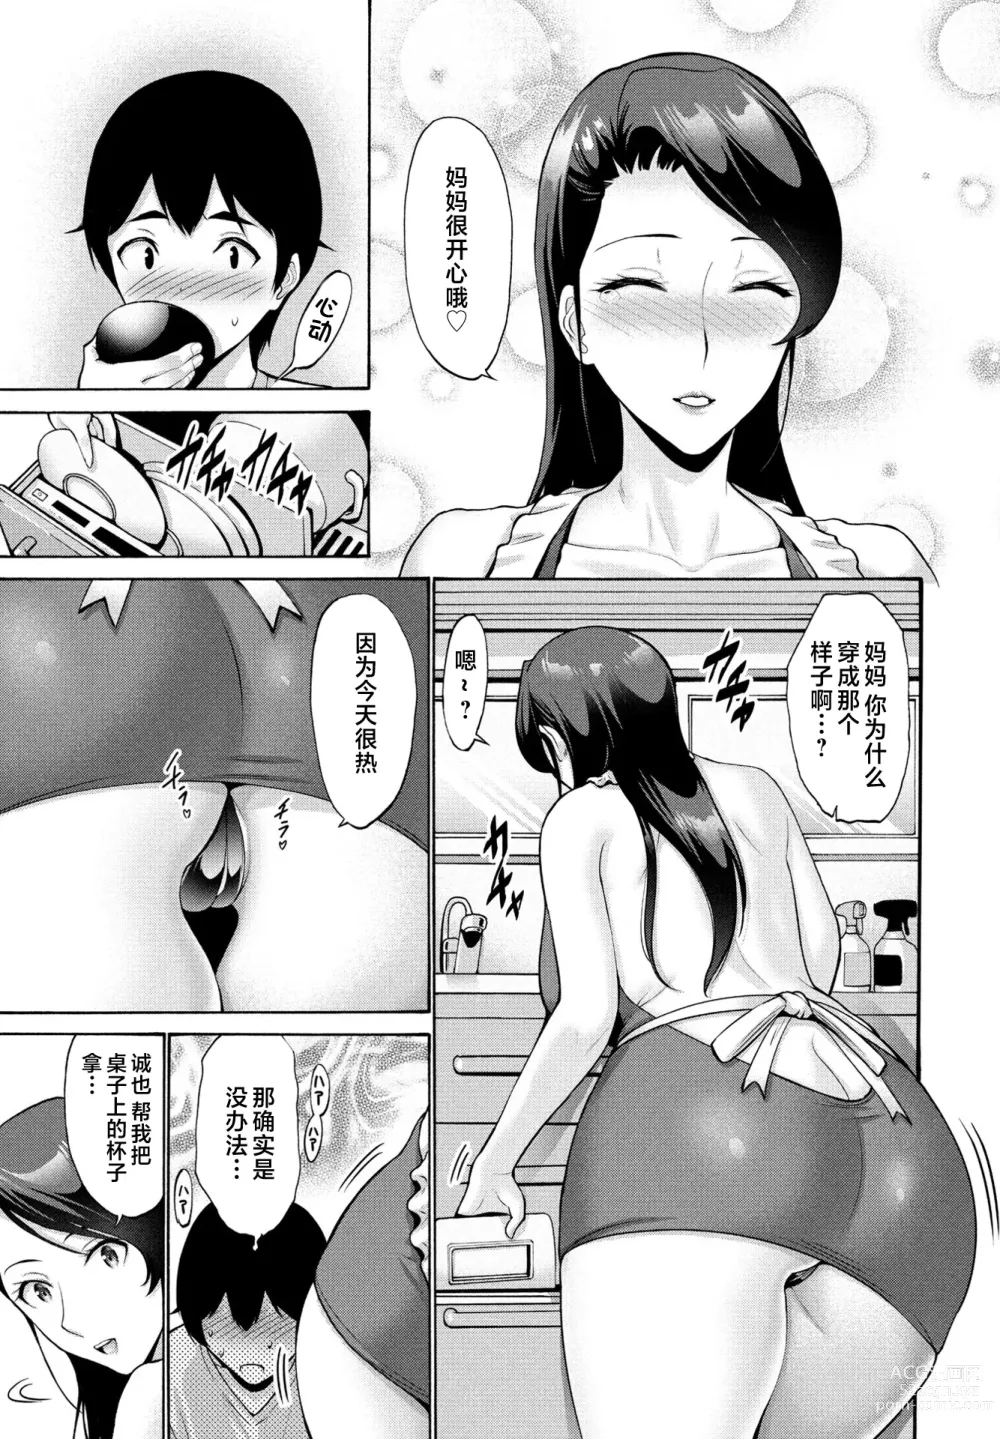 Page 3 of manga Hamayuri Club Ch. 1-3